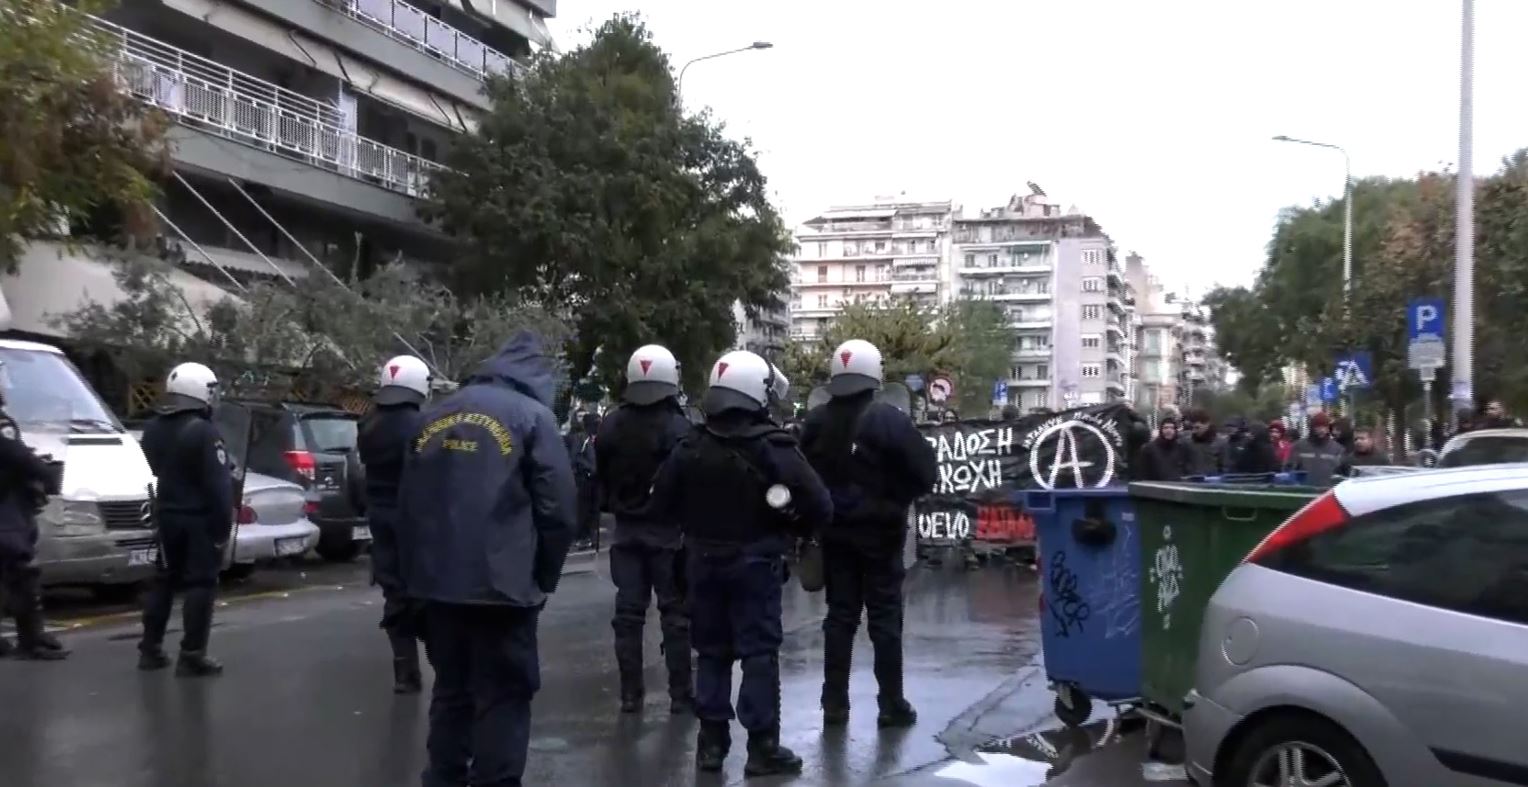 Θεσσαλονίκη: Σε εξέλιξη αστυνομική επιχείρηση για εκκένωση κτιρίου – Τ. Θεοδωρικάκος: Άλλος ένας χώρος αποδόθηκε στην κοινωνία